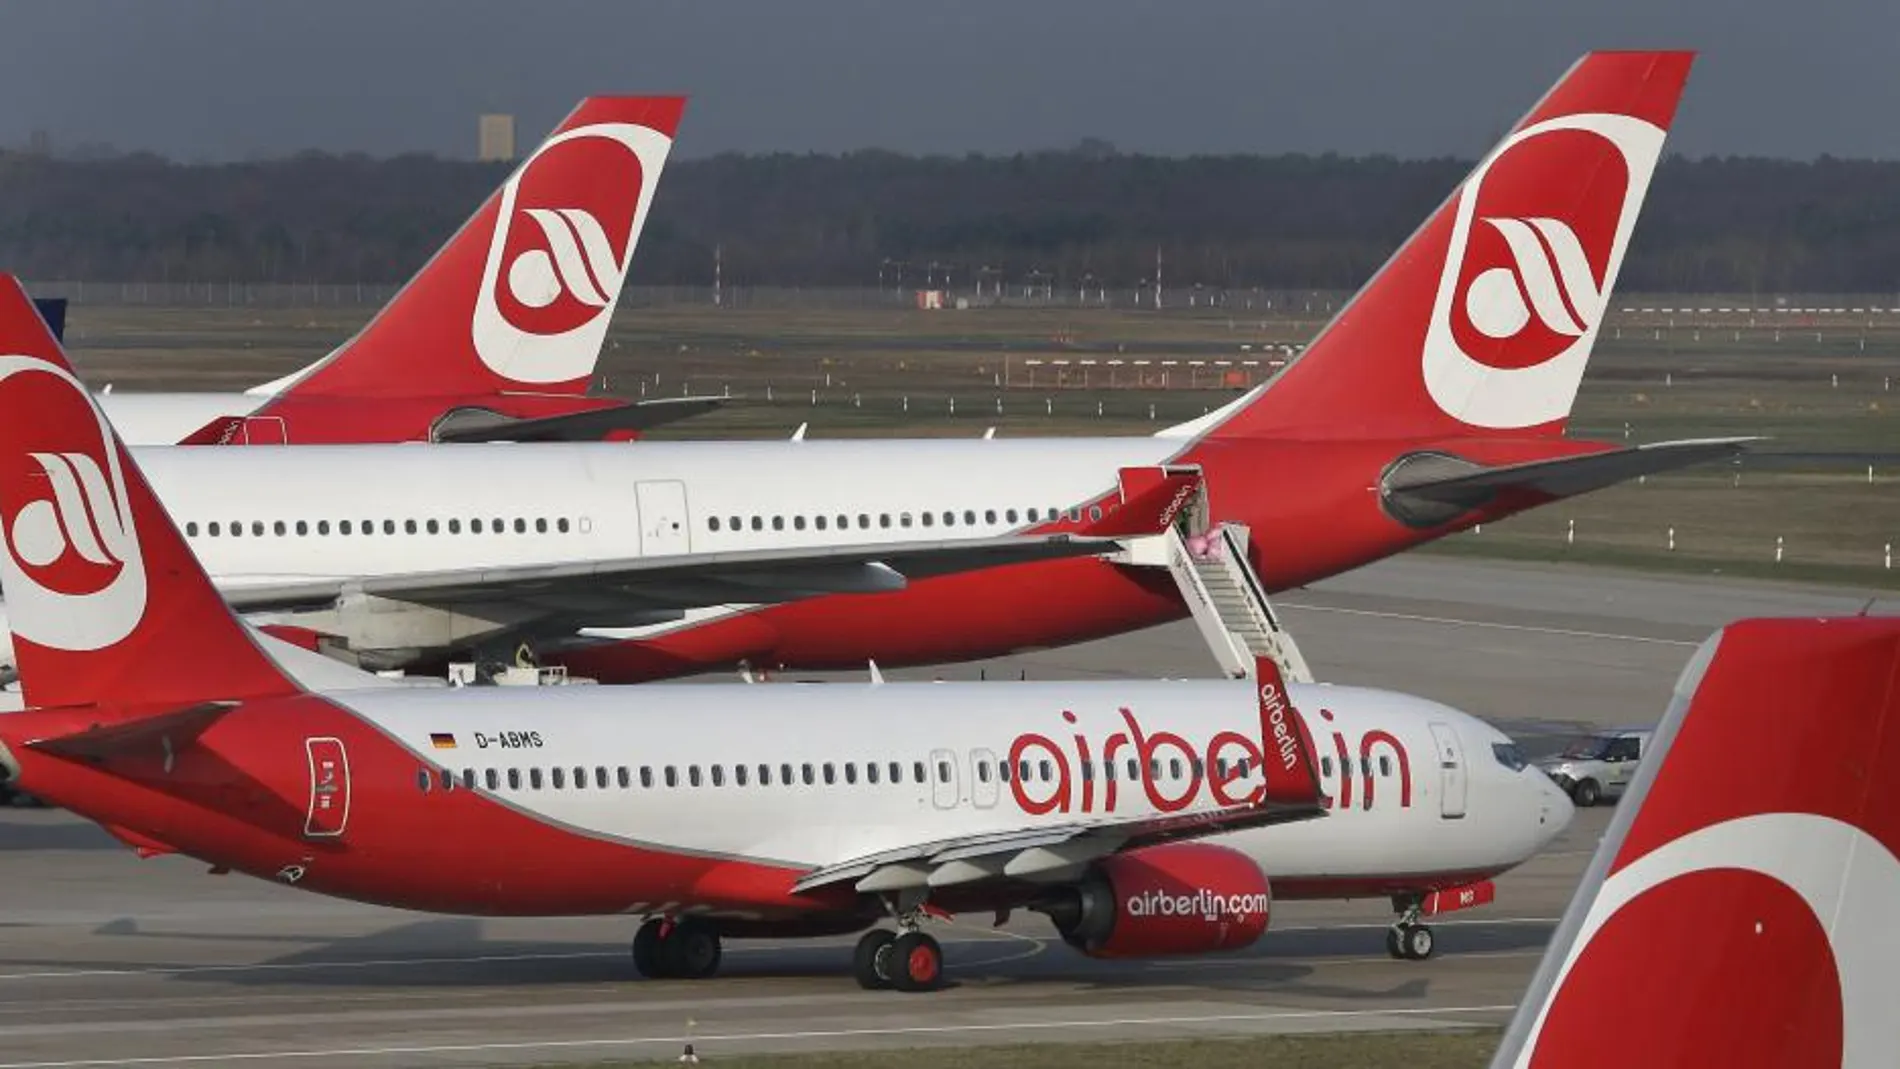 La dirección de Air Berlin suspendió ayer las negociaciones con un potencial nuevo comprador de la aerolínea para la absorción de más de 1.200 pilotos de la compañía quebrada